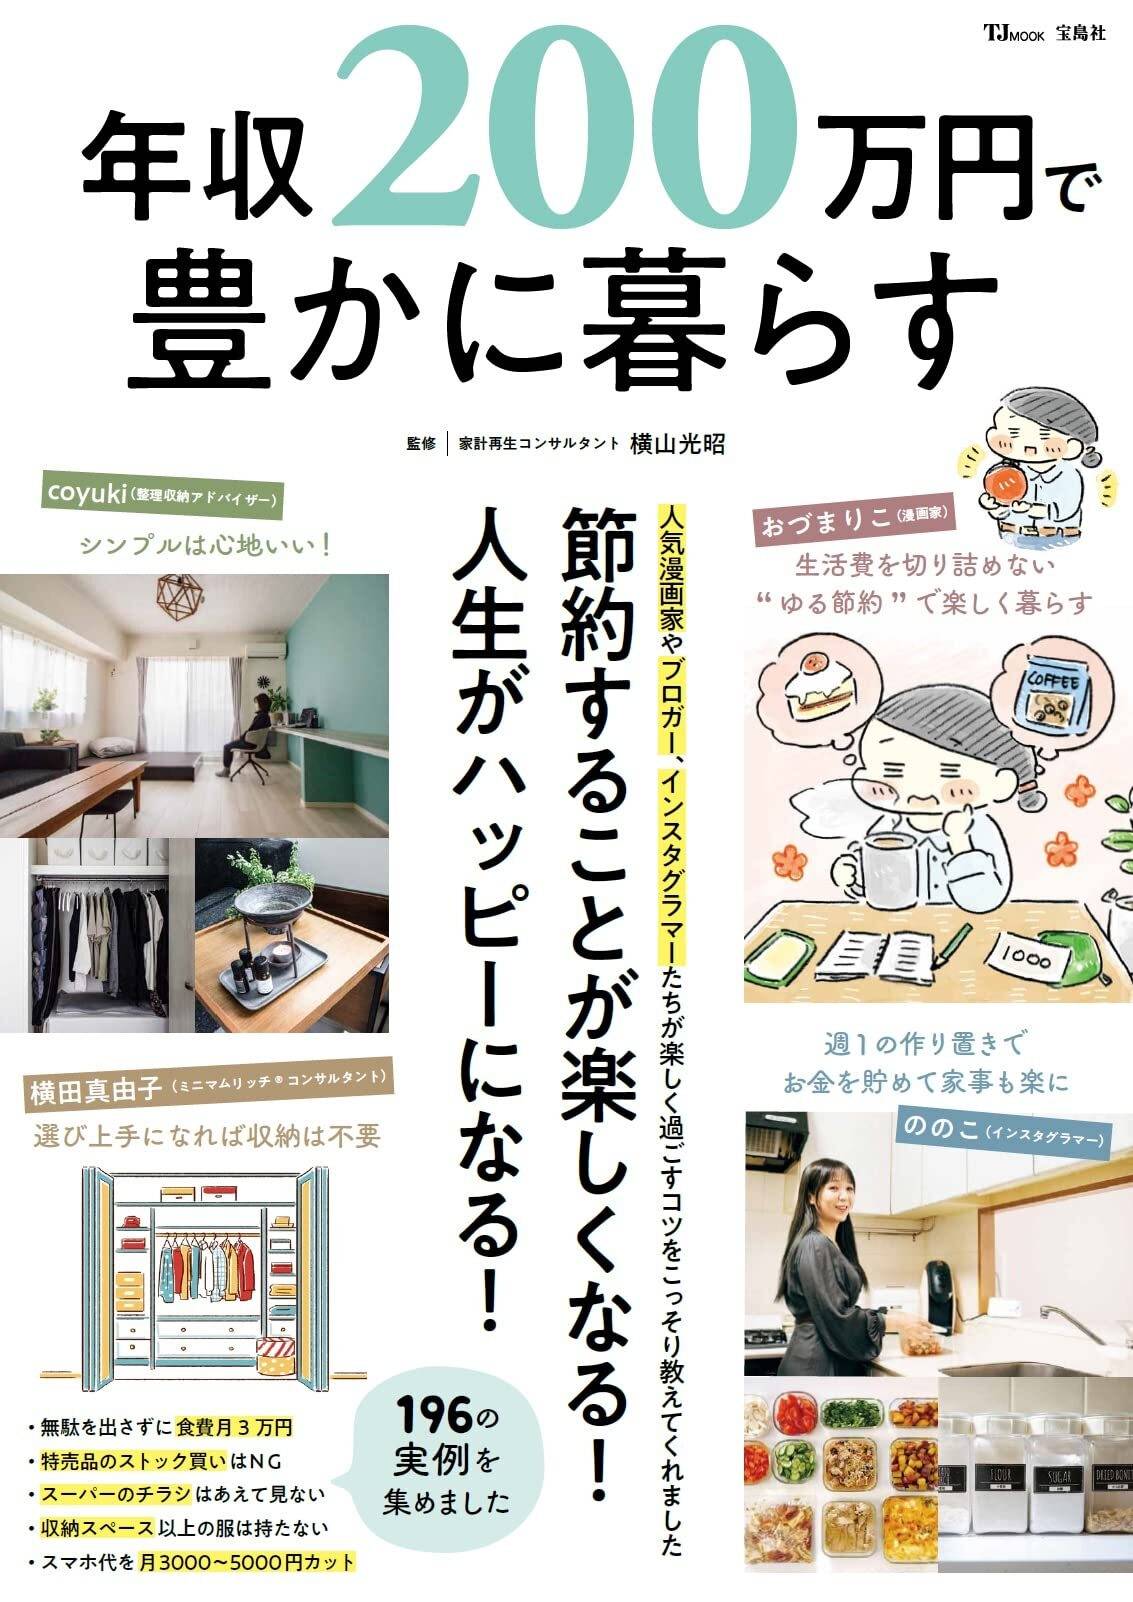 최근 일본에서 출판되어 논란이 되었던 책.jpg | 인스티즈